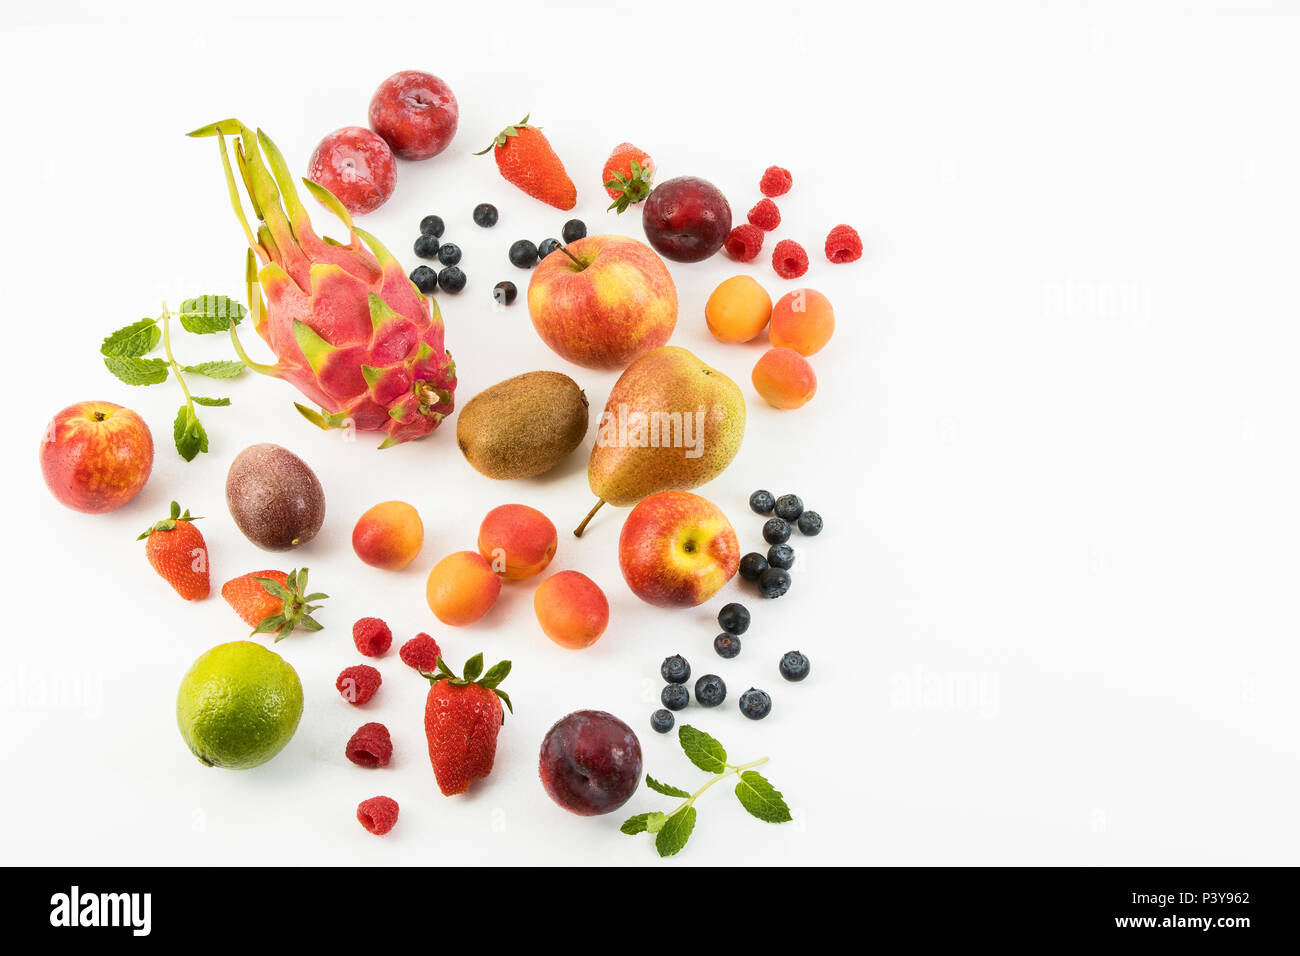 Obst, Früchte-Mix, Erdbeeren, Himbeeren, Blaubeeren, Äpfel, Birnen, Limette, Kiwi, Pflaumen, Aprikosen, Drachenfrucht und Minze Stock Photo